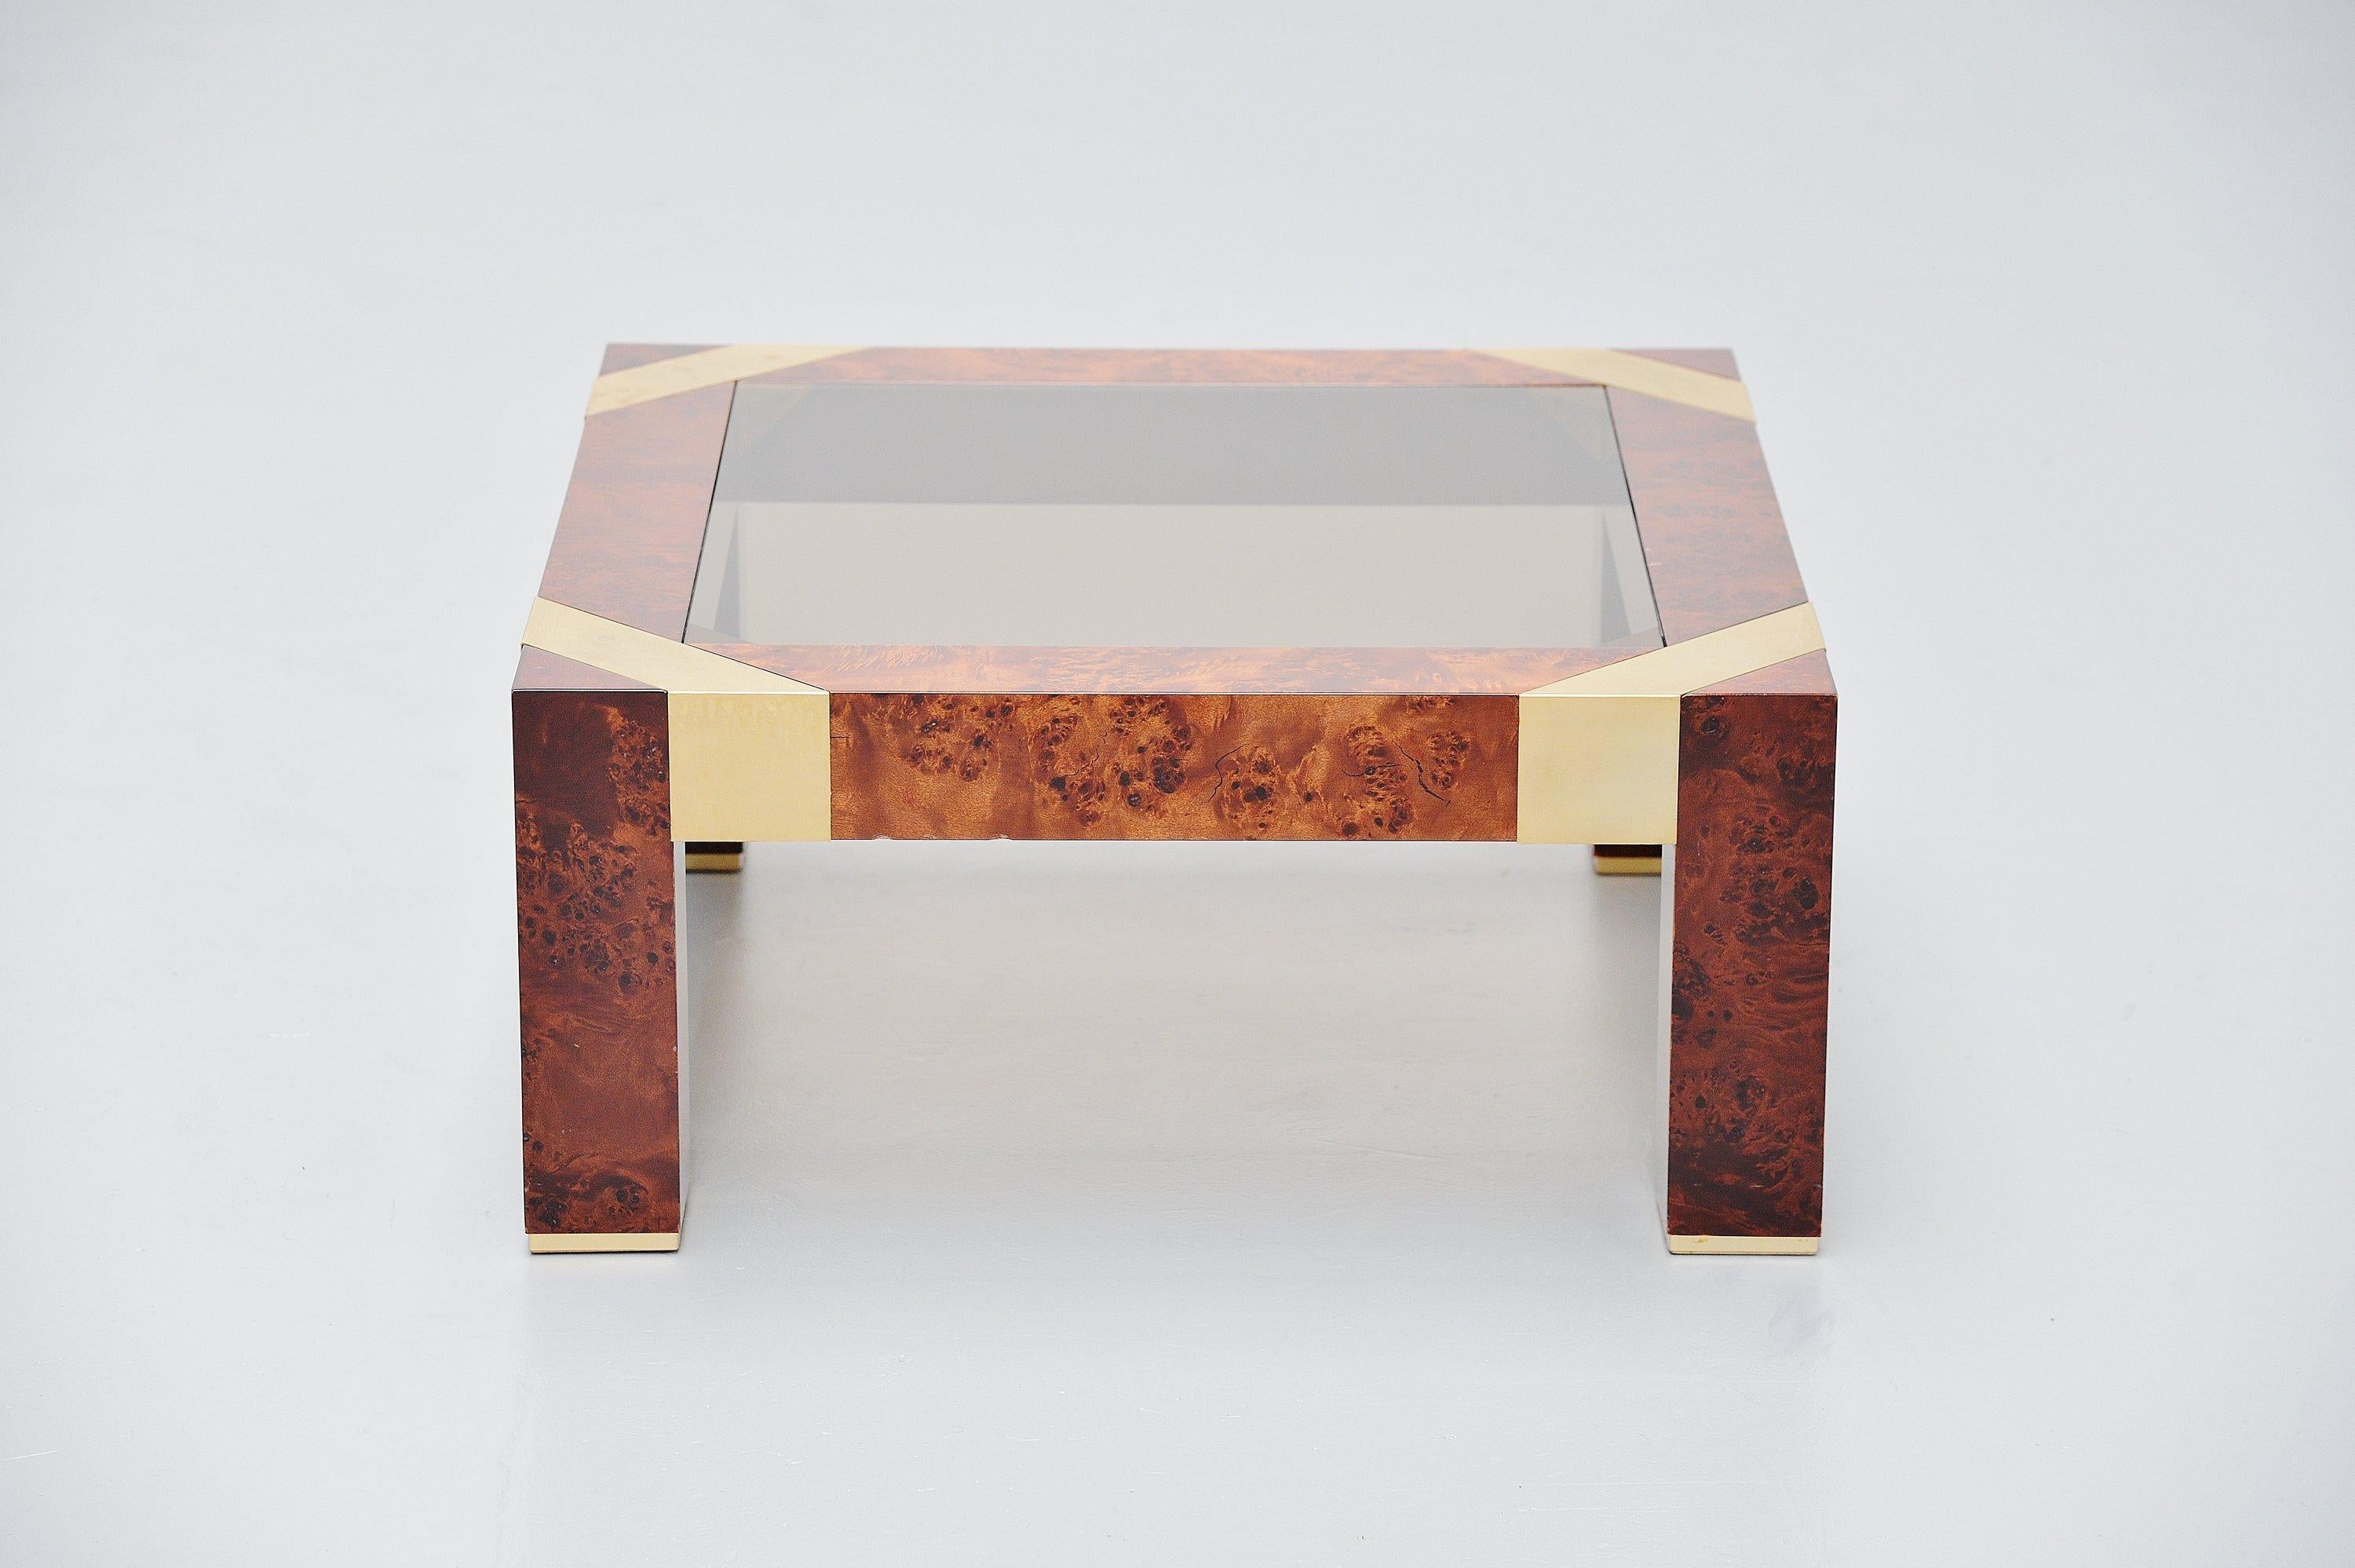 Belle table basse de style Hollywood Regency conçue par Jean Claude Mahey et fabriquée par le Studio Mahey, France, 1970. Le canapé est plaqué en bois de ronce avec une finition brillante. Les détails sont en métal plaqué laiton et le plateau est en